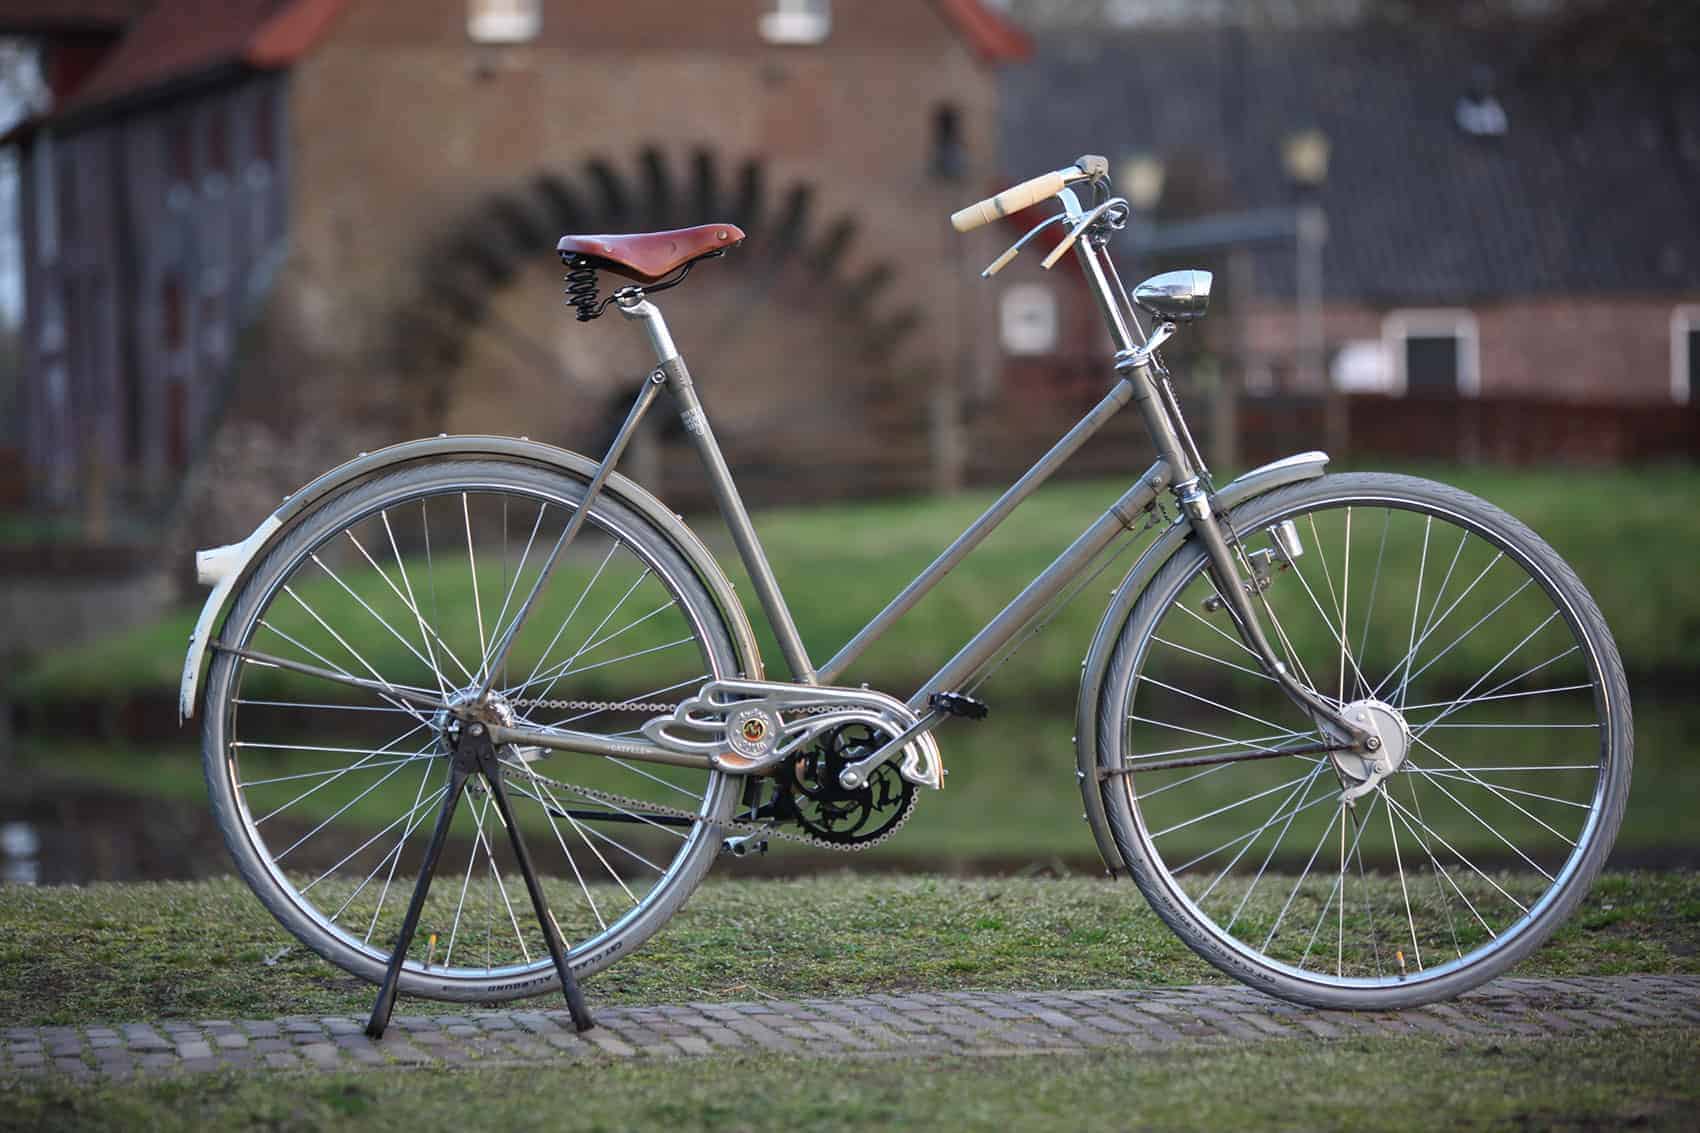 World Bikes Gewone fiets elektrisch maken, gewone fietsen elektrisch maken, elektrisch maken fiets